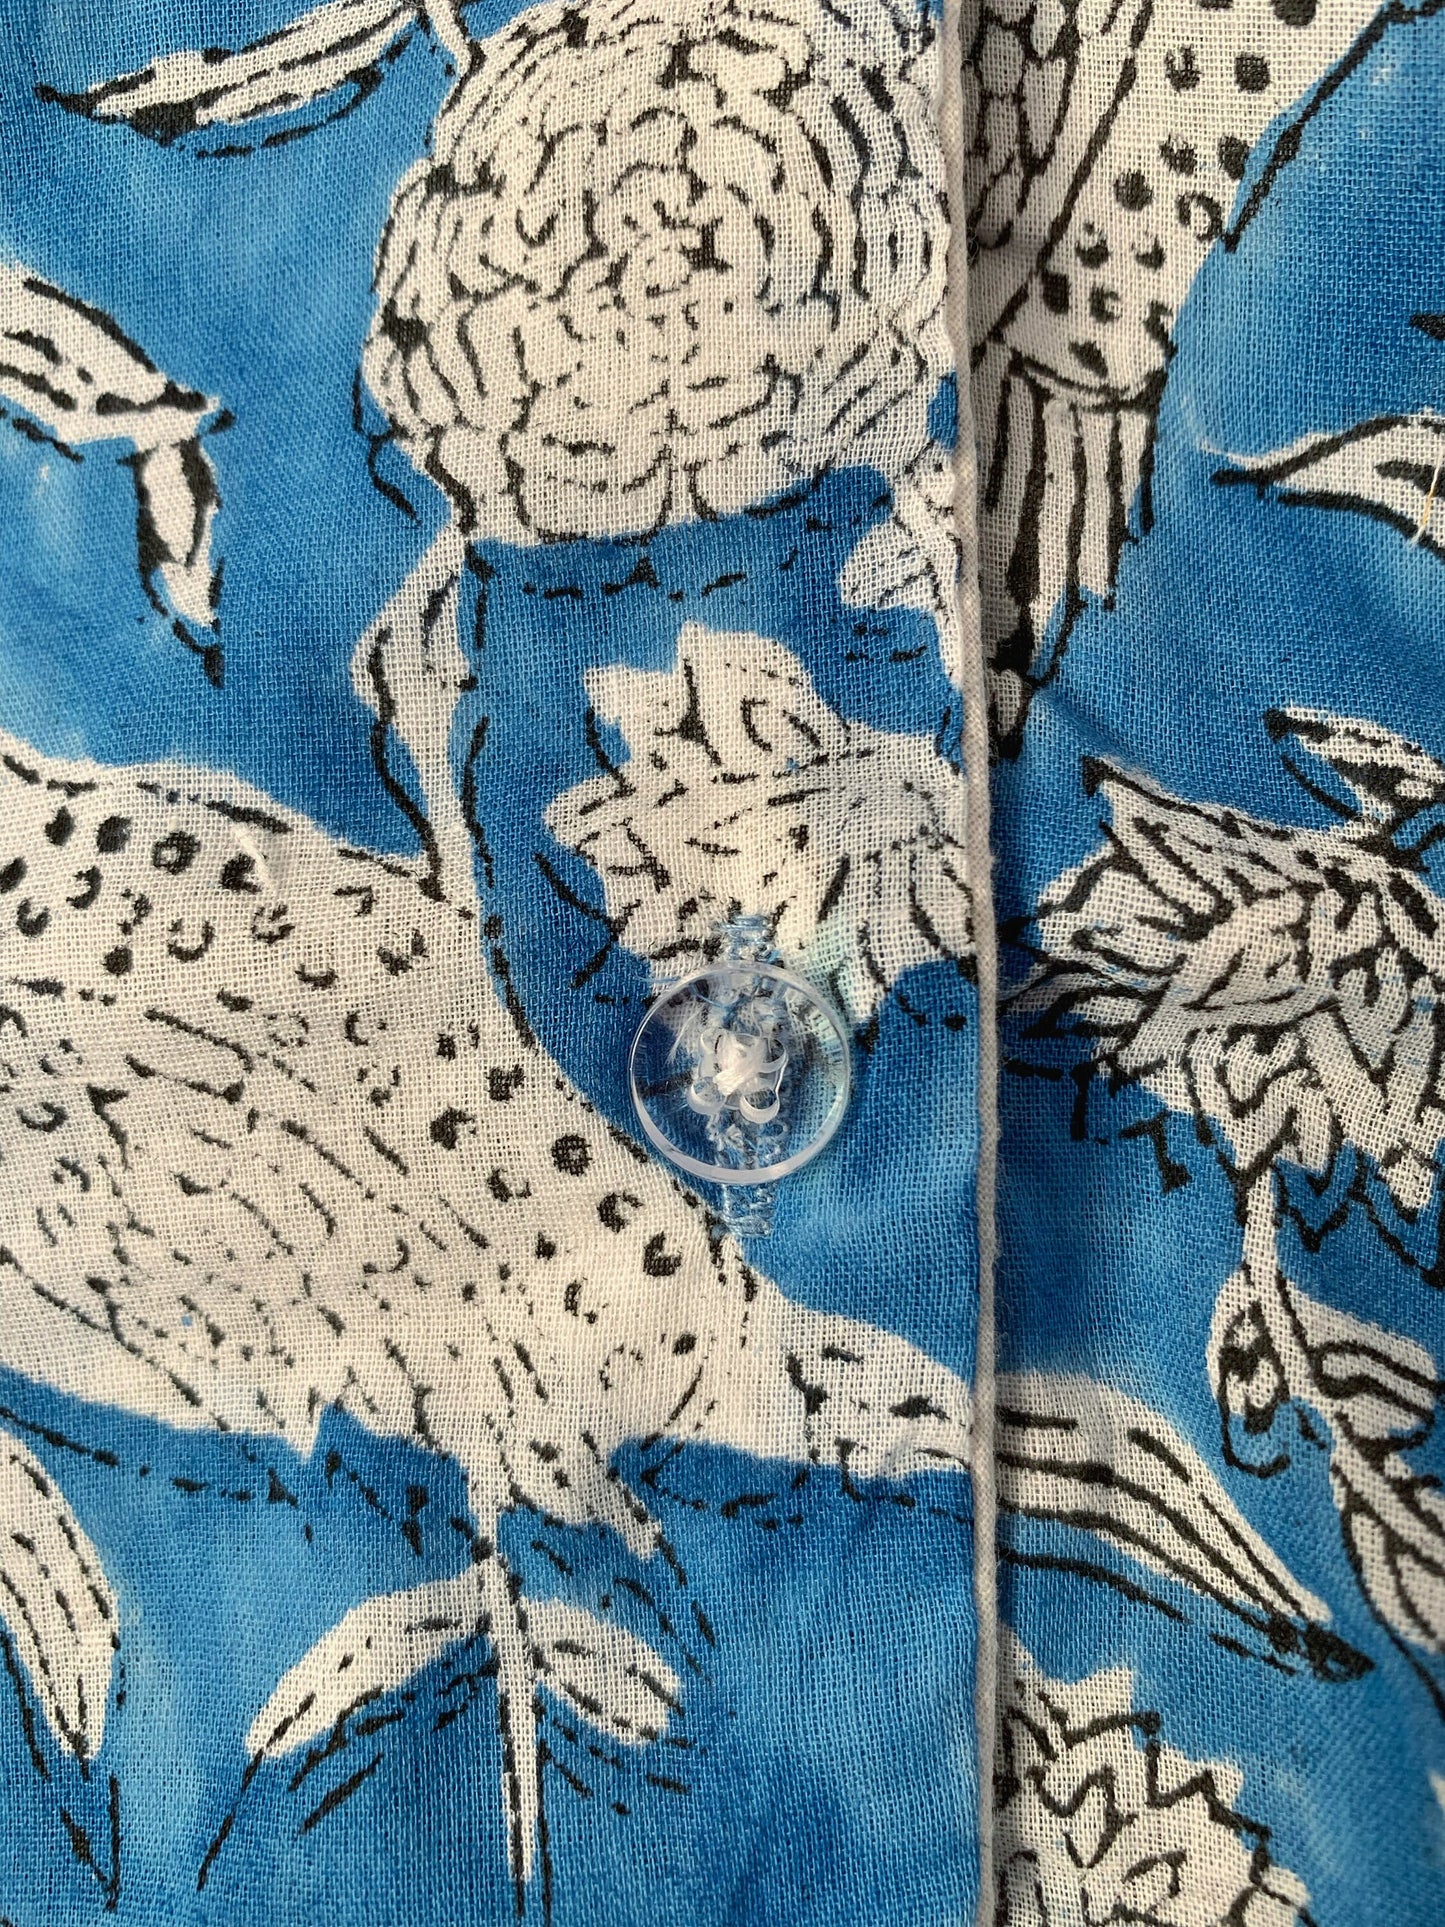 SET regalo · Pijama manga/pantalón corto y zapatillas a juego · Algodón puro estampado block print artesanal en India · Azul flores